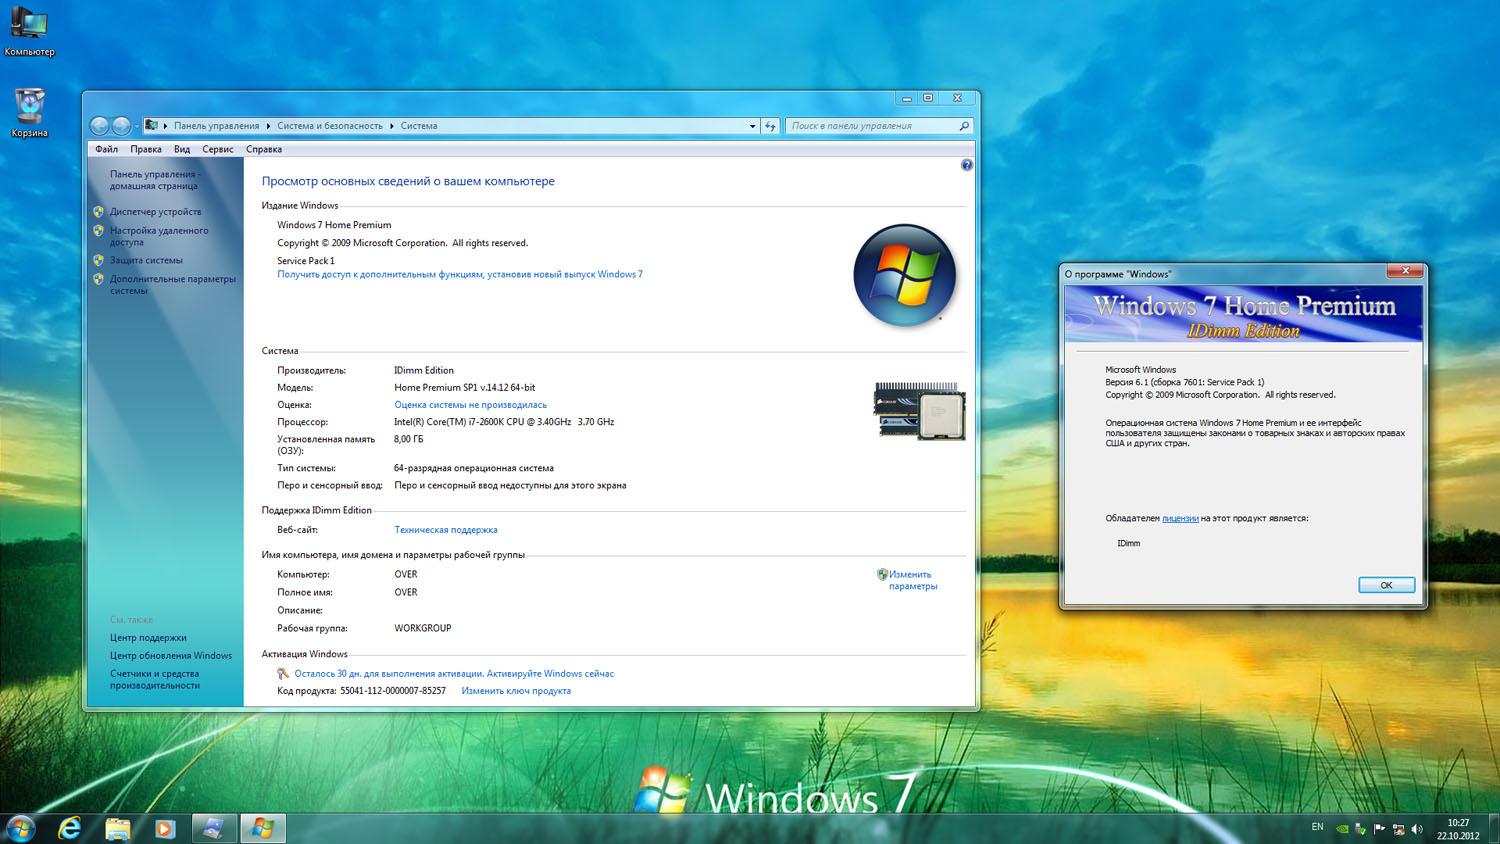 Модель windows 7. Виндовс 7 домашняя расширенная диск. Windows 7 домашняя Базовая 64 bit sp1. Виндовс 7 домашний расширенный. Windows 7 Home Premium.